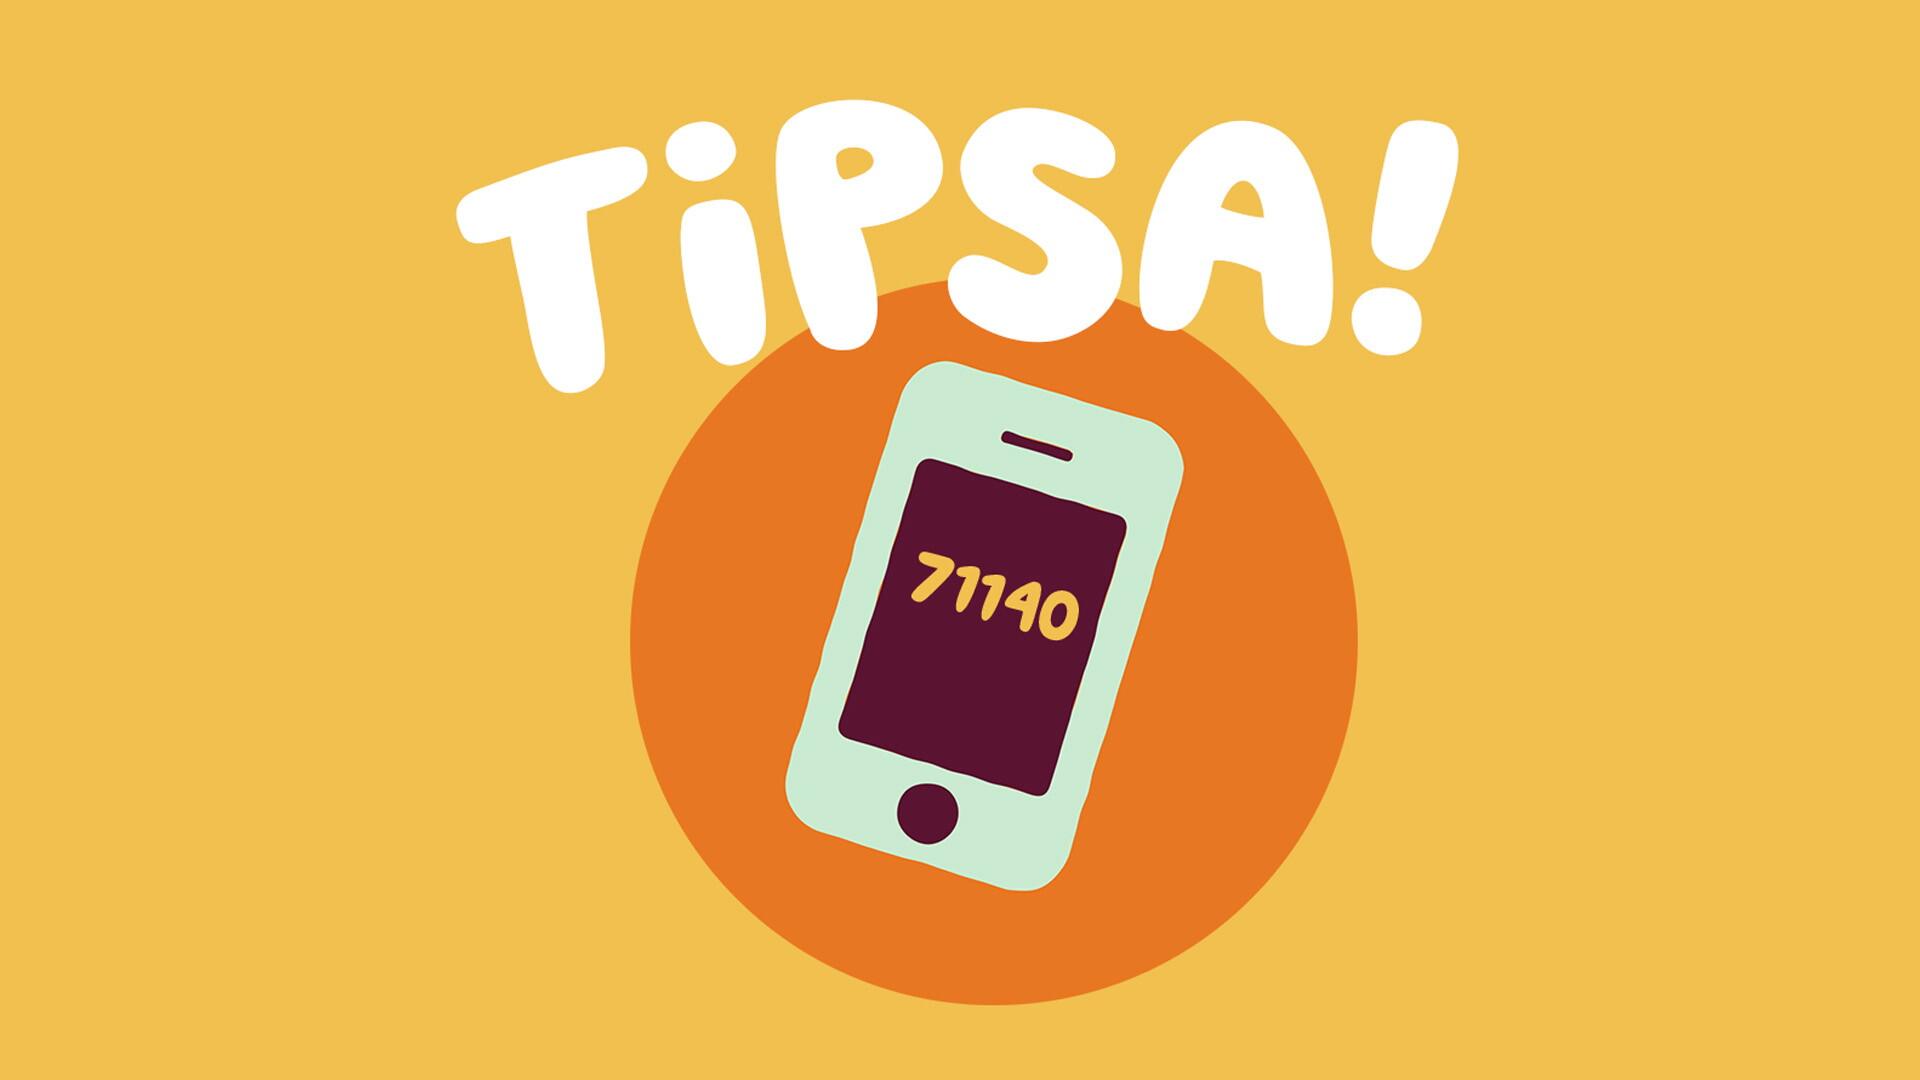 Tecknad mobiltelefon med texten "tipsa" och numret 71140.